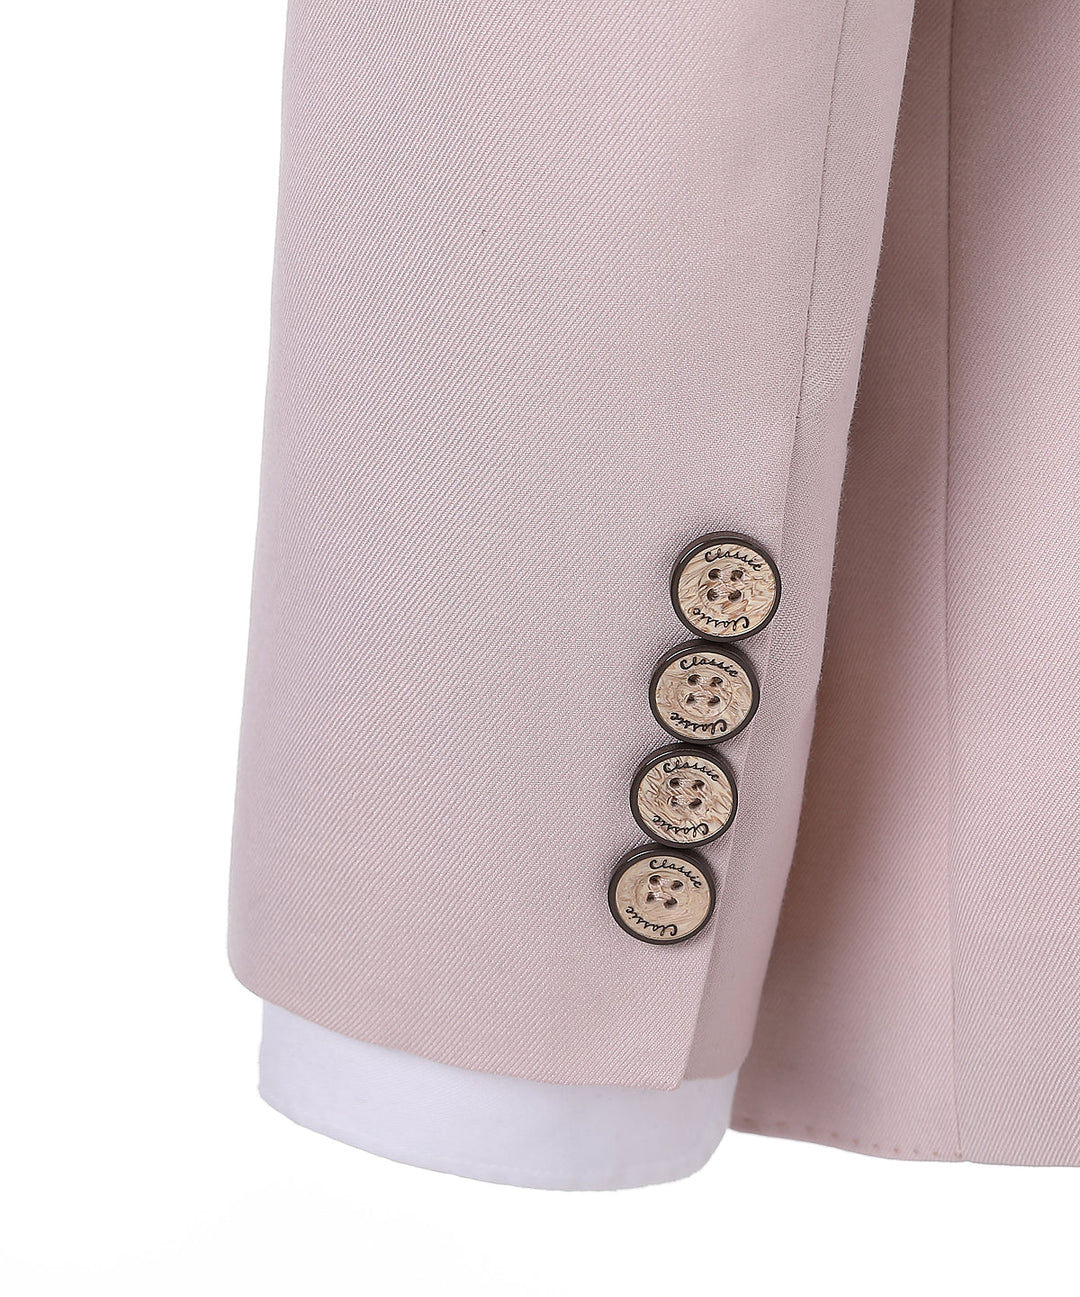 Formal Men's Suit 3-Pieces Peak Lapel Tuxedos (Blazer+vest+Pants) menseventwear